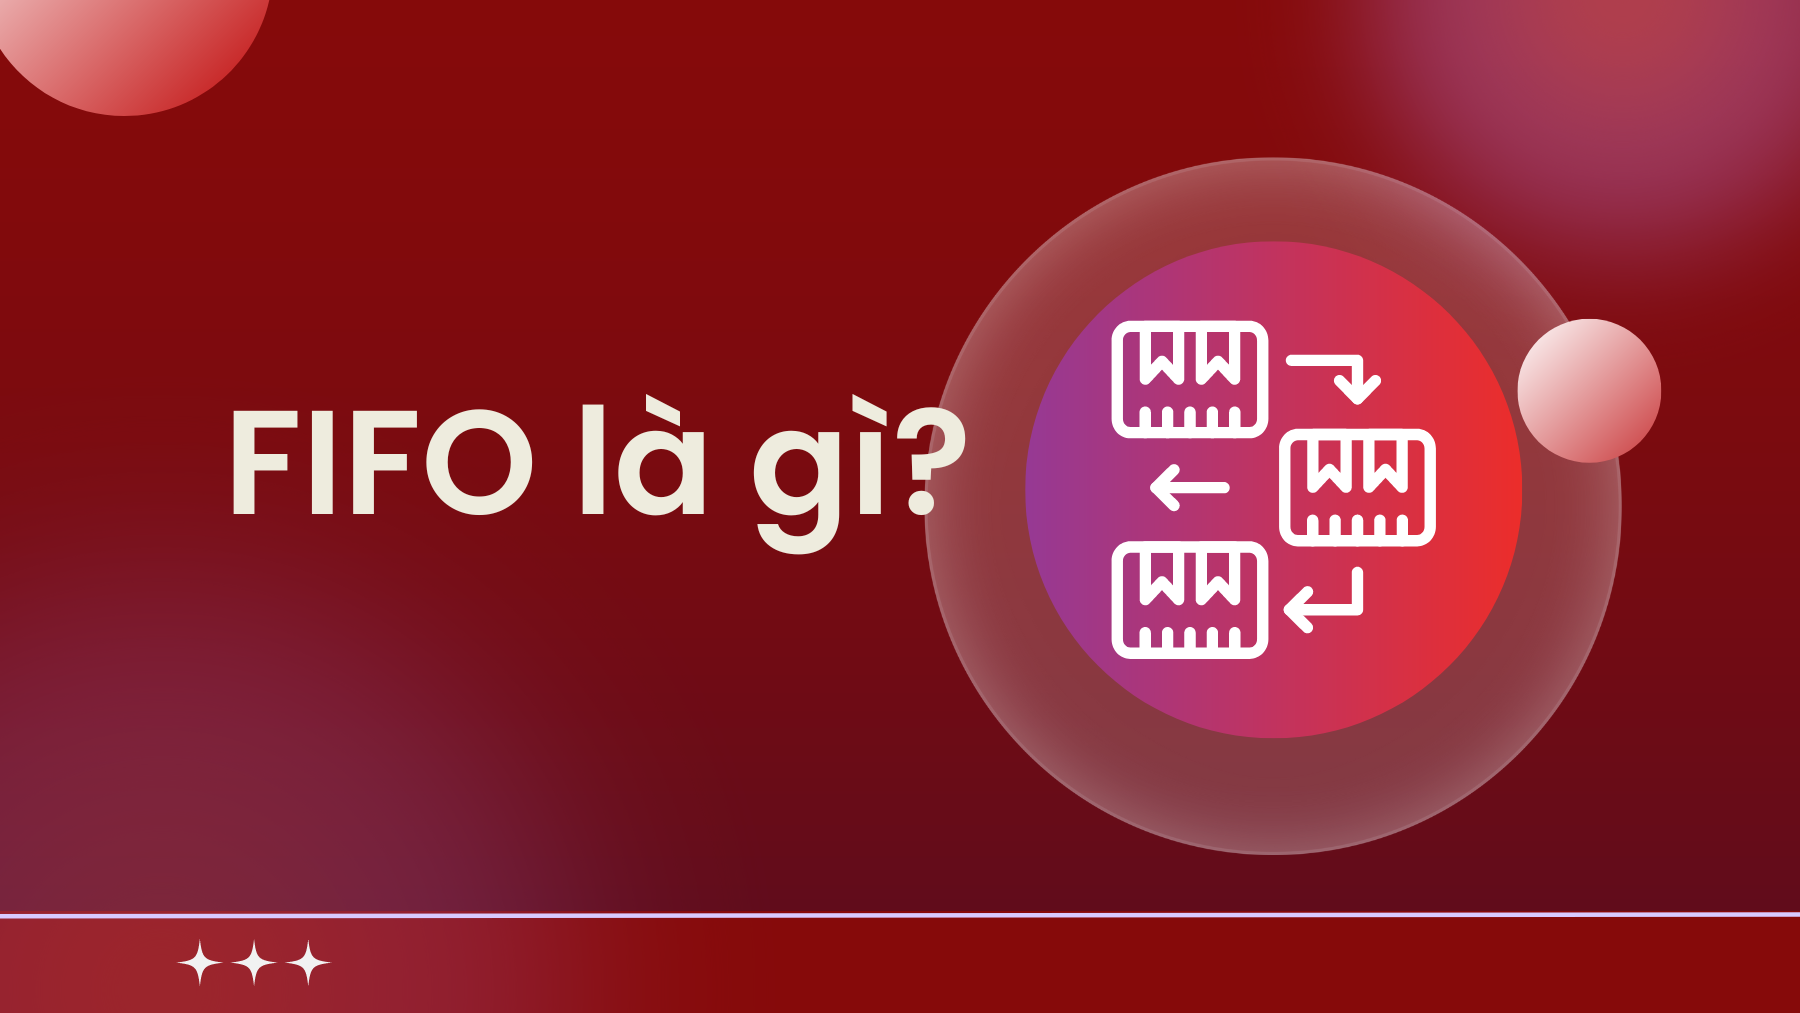 FIFO là gì? Nguyên tắc fifo trong quản lý hàng hoá là gì? (phần 1)